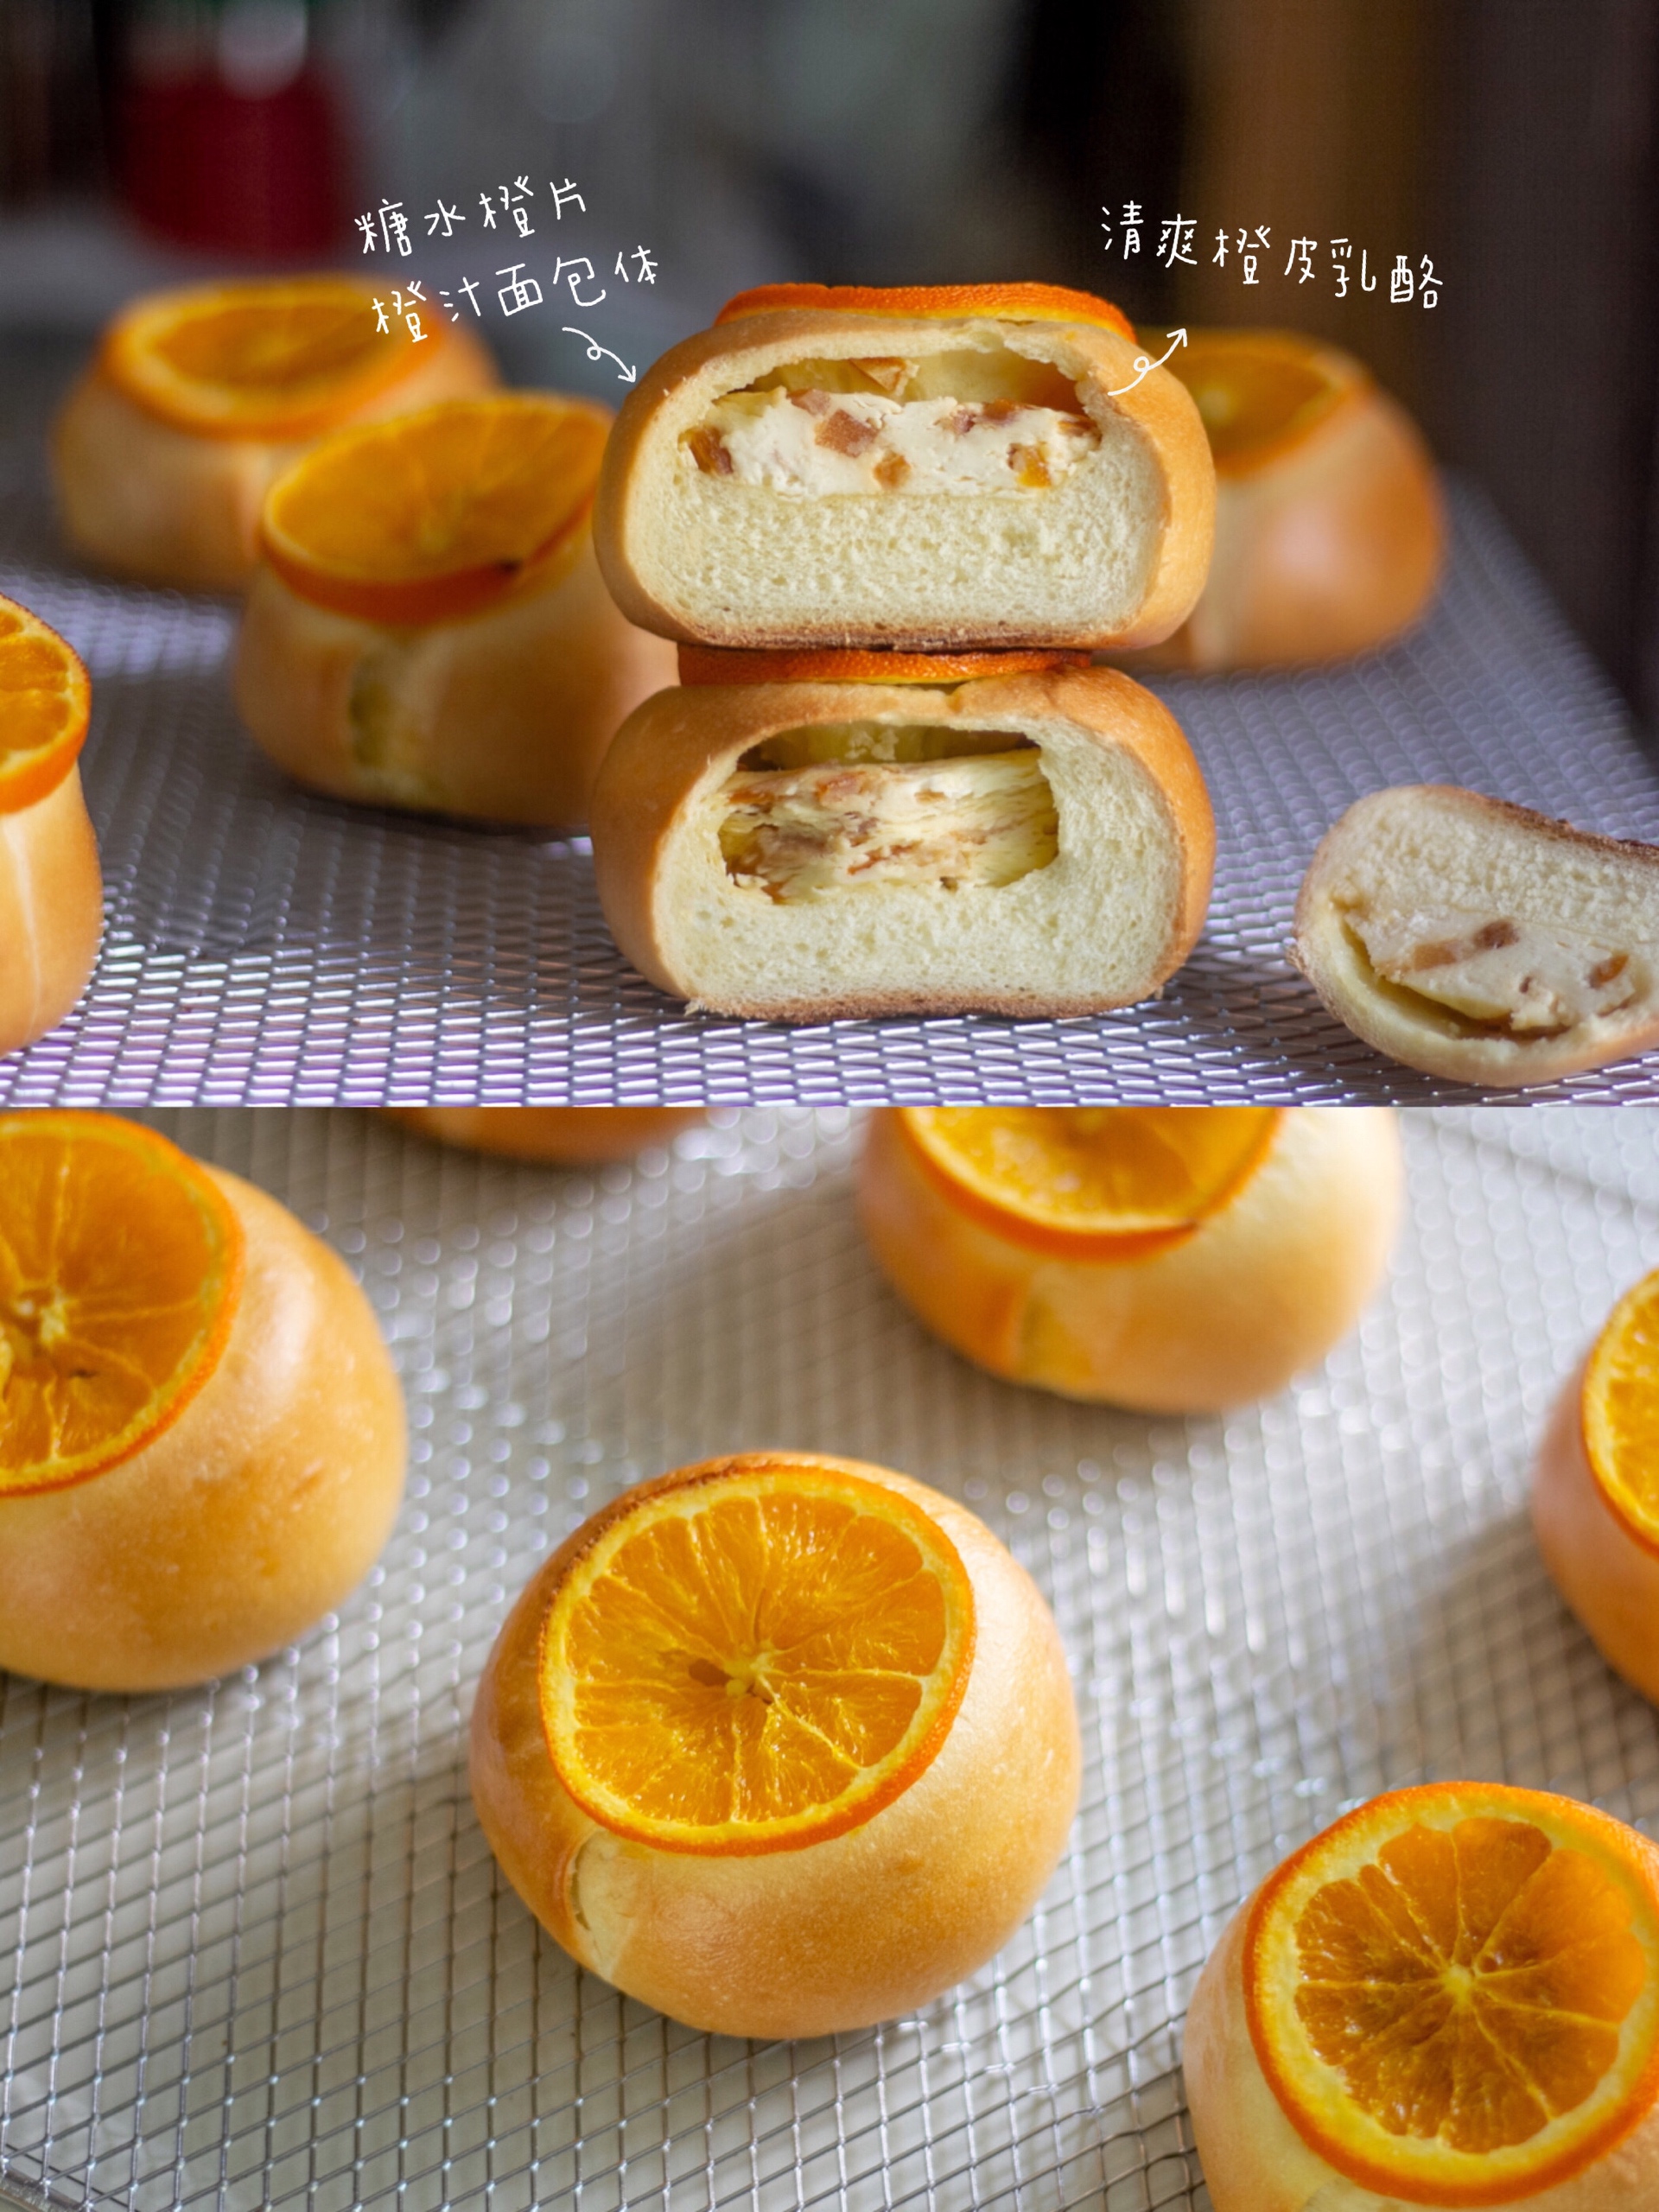 三重香橙乳酪贝果🍊元气橙香💗颜值担当的做法